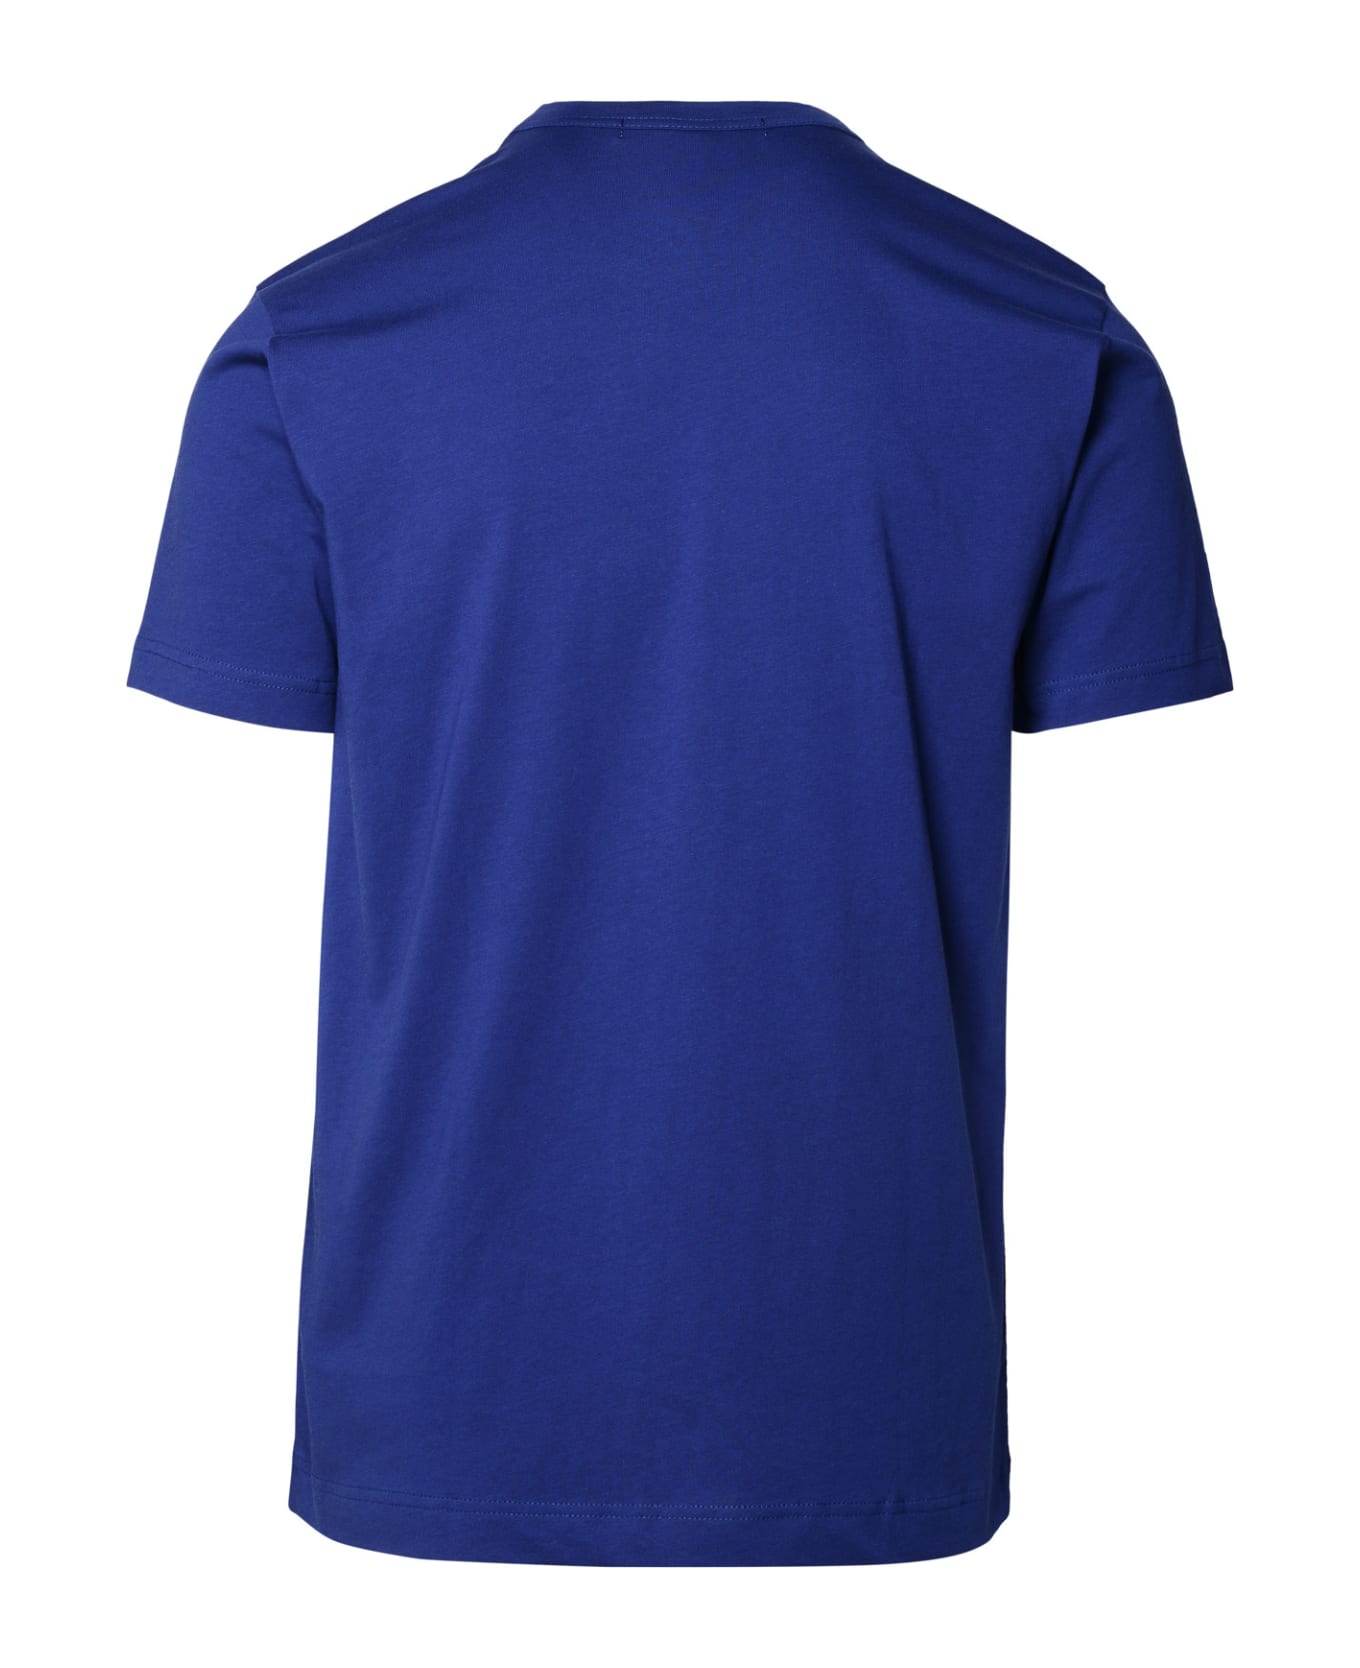 Comme des Garçons Shirt Blue Cotton T-shirt - Blue シャツ